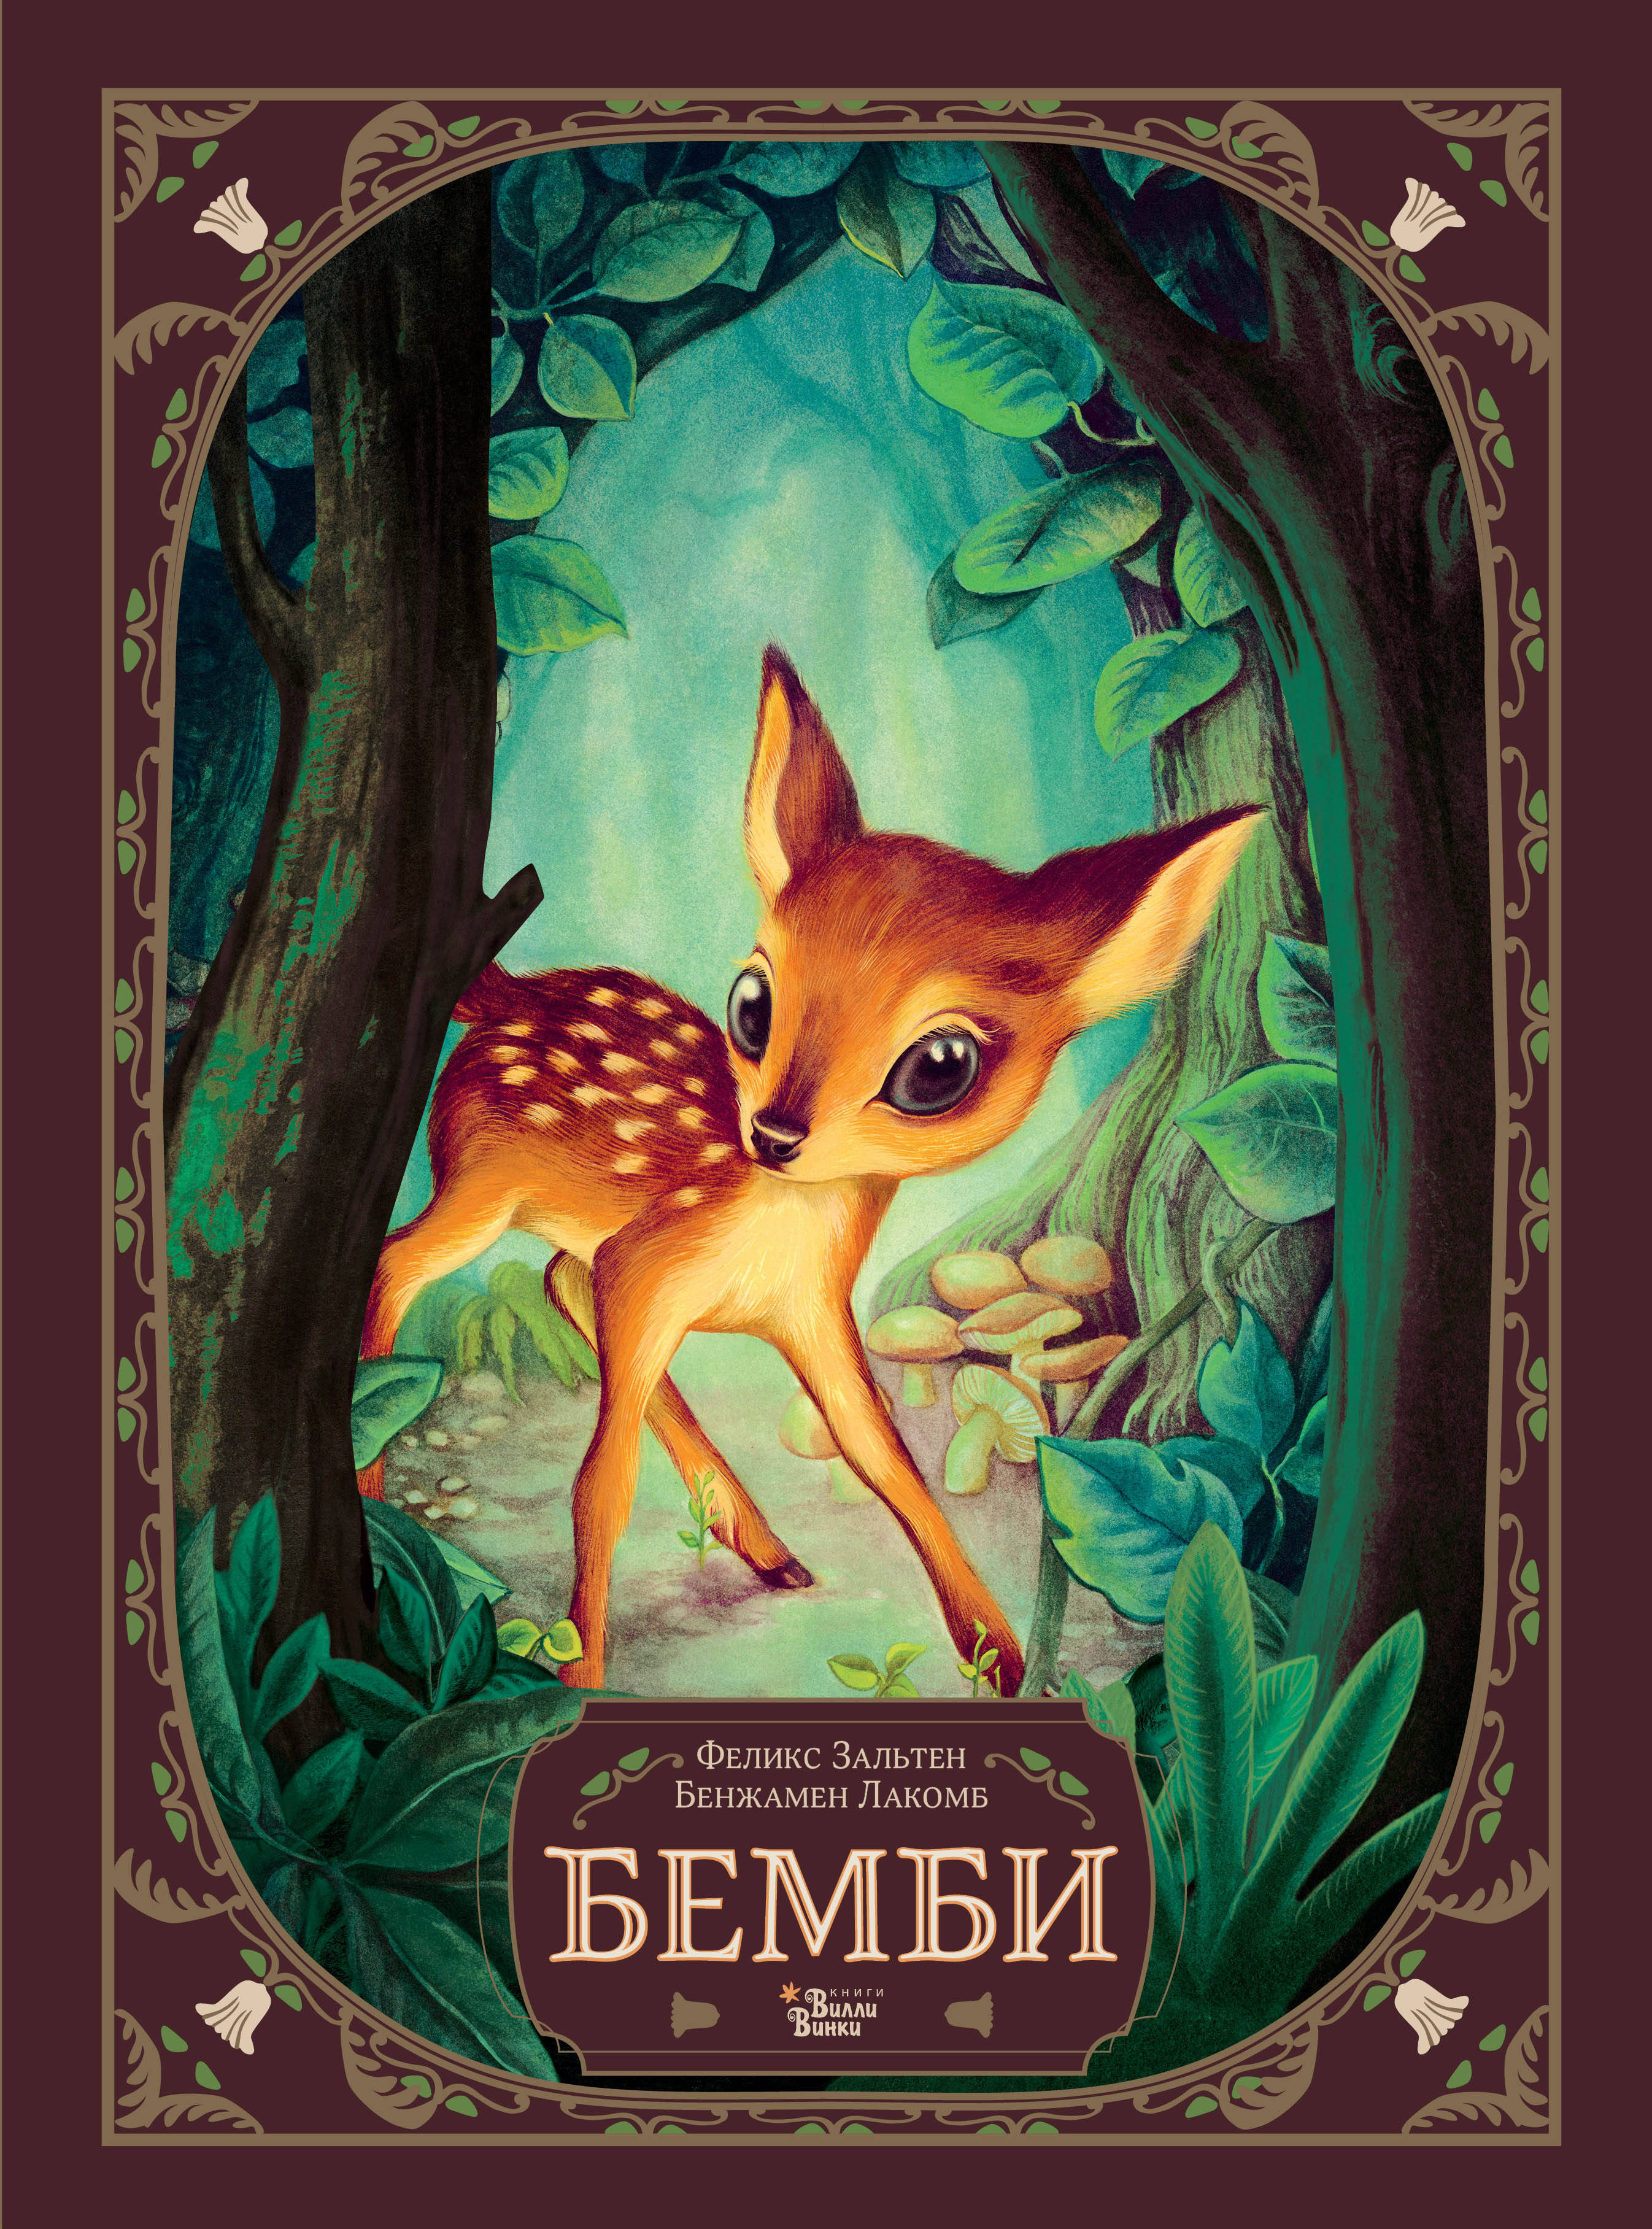 бемби лесной принц развивающая книжка Зальтен Феликс Бемби. История жизни в лесу